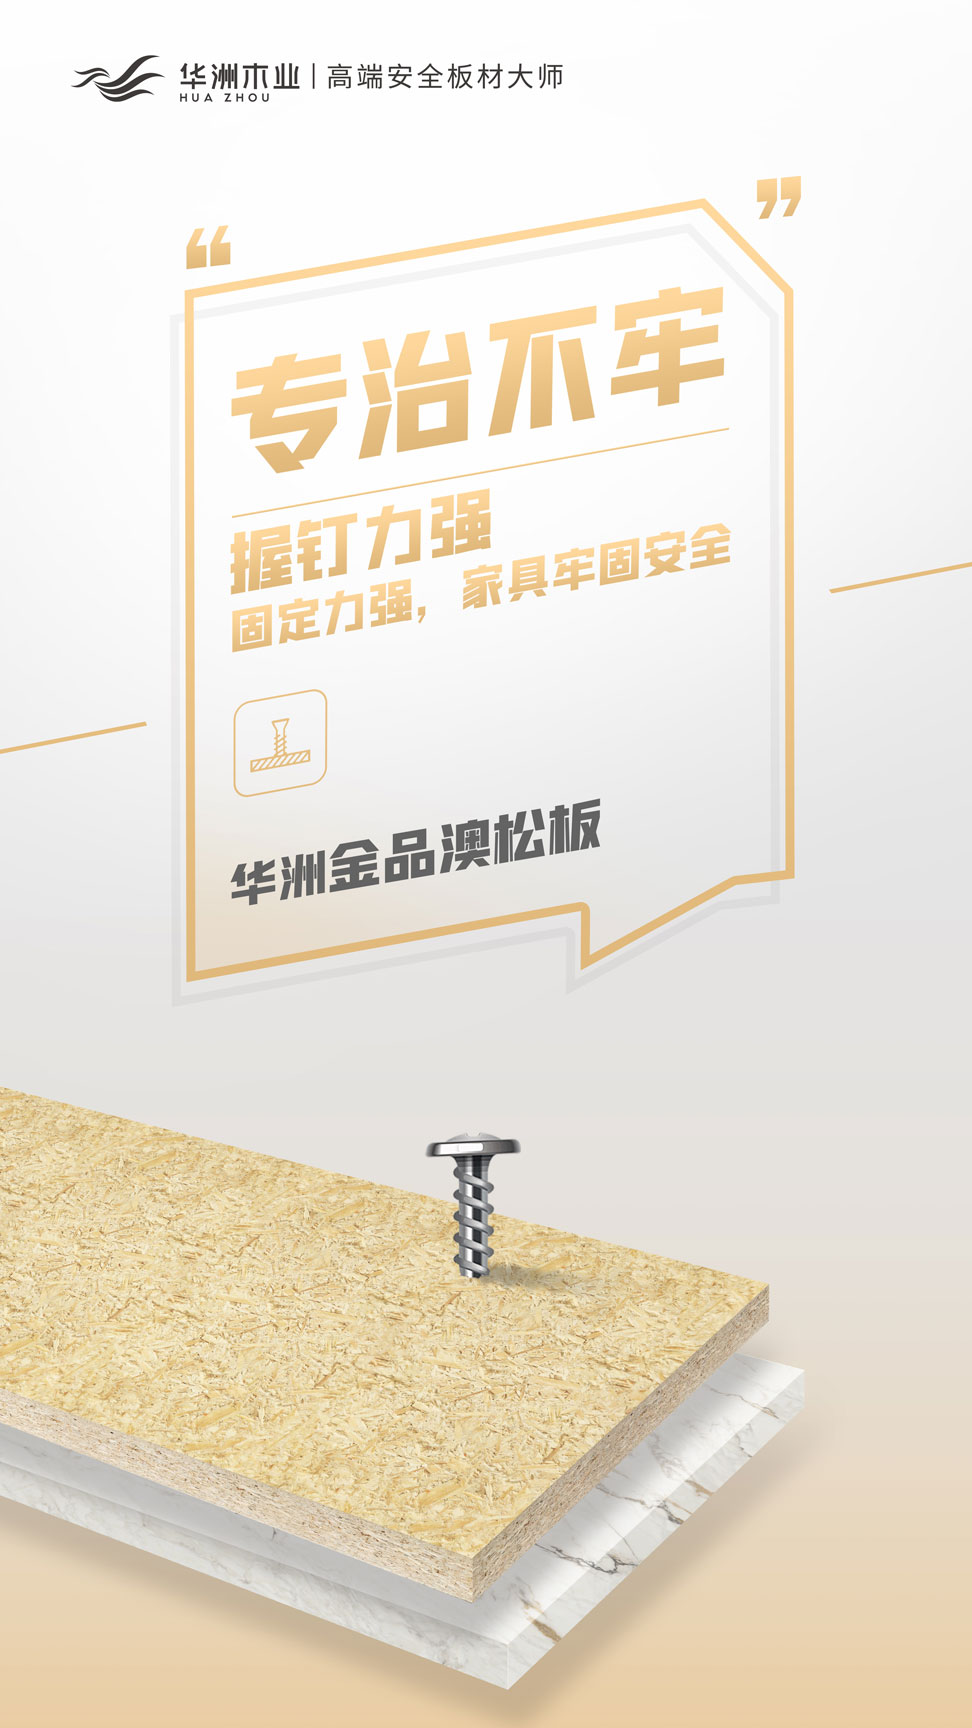 双新品齐发 | 华洲金品澳松板，一门到顶门板的理想板材(图7)